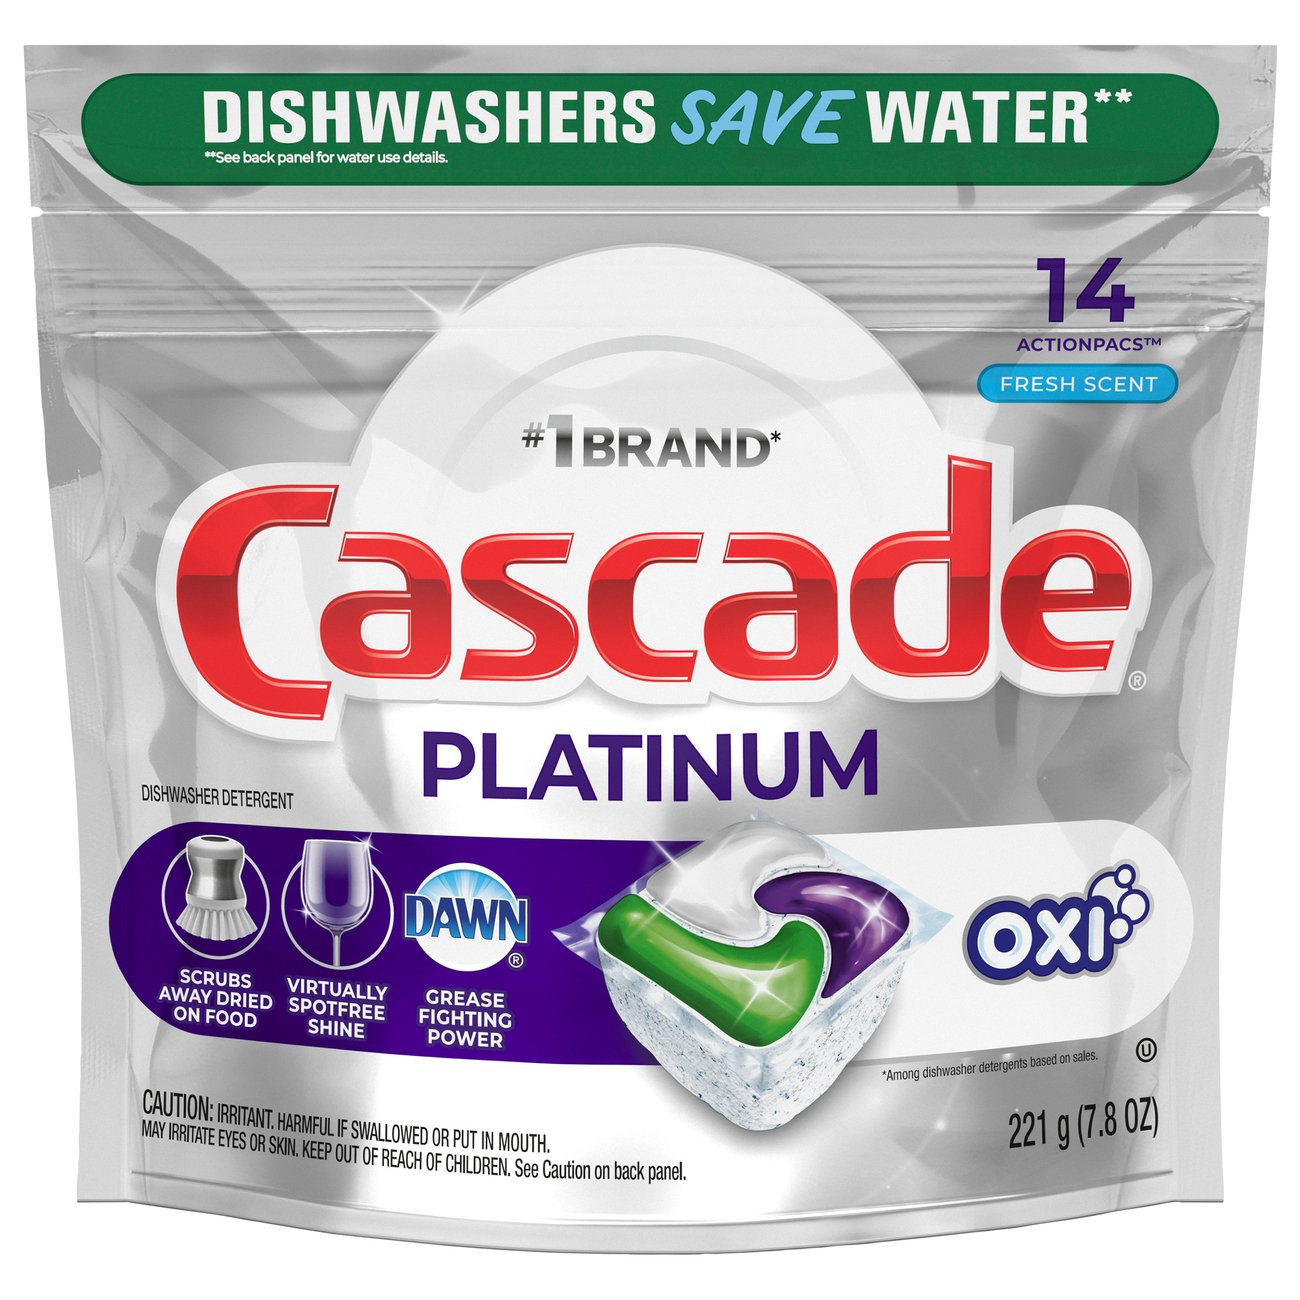 Cascade Platinum Actionpacs Fresh Scent Plus Oxi Dishwasher Detergent Shop Dish Soap Detergent At H E B,Ball Python Enclosure